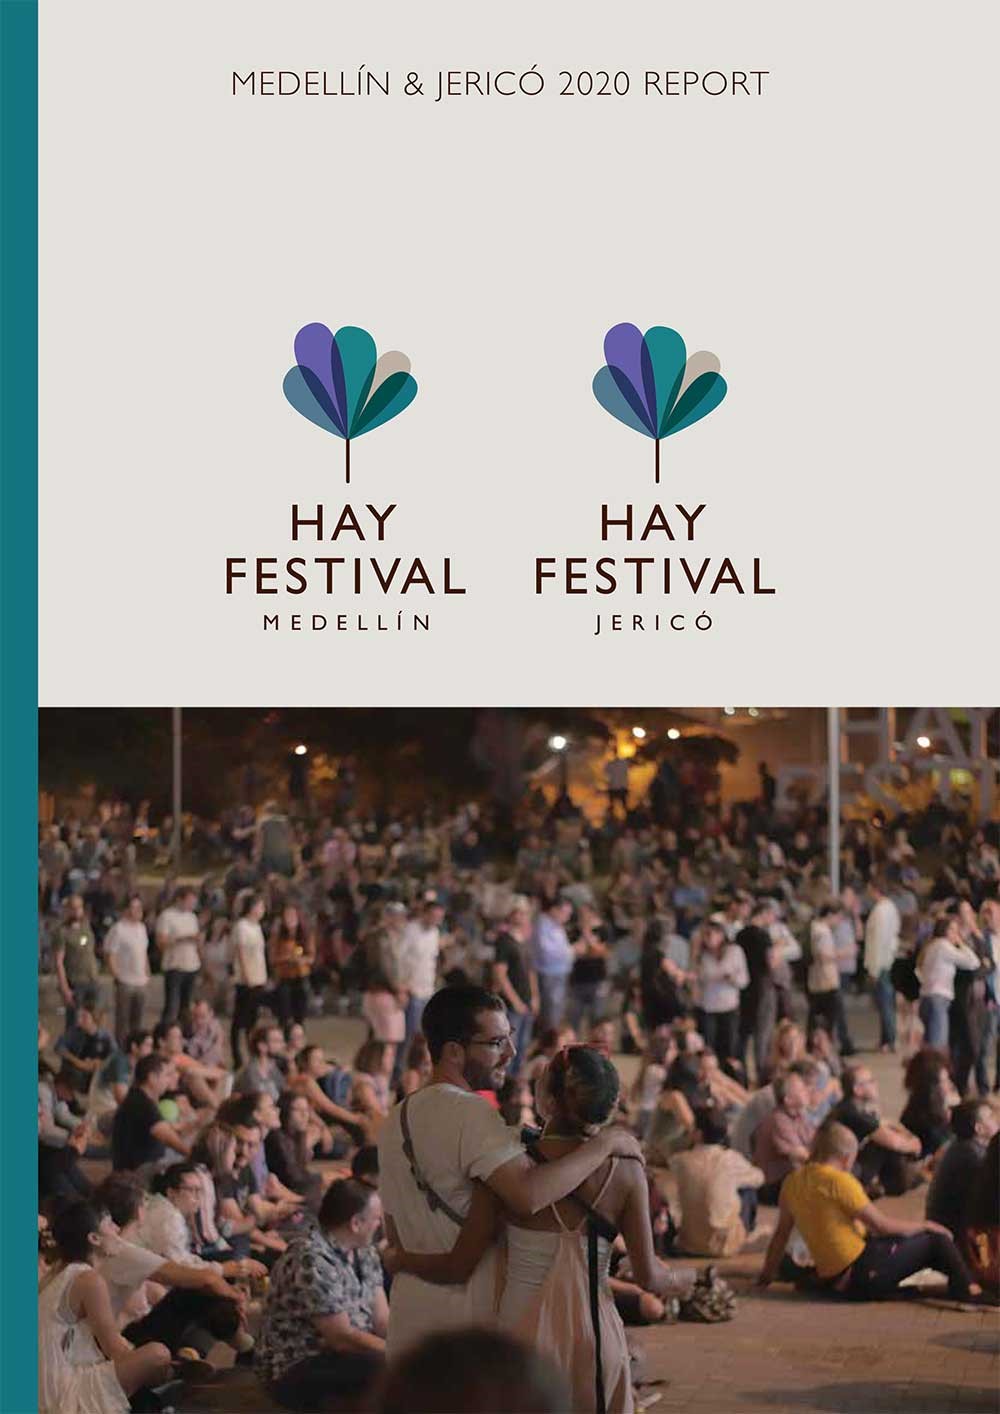 Hay Festival Medellín & Jericó 2020 Report